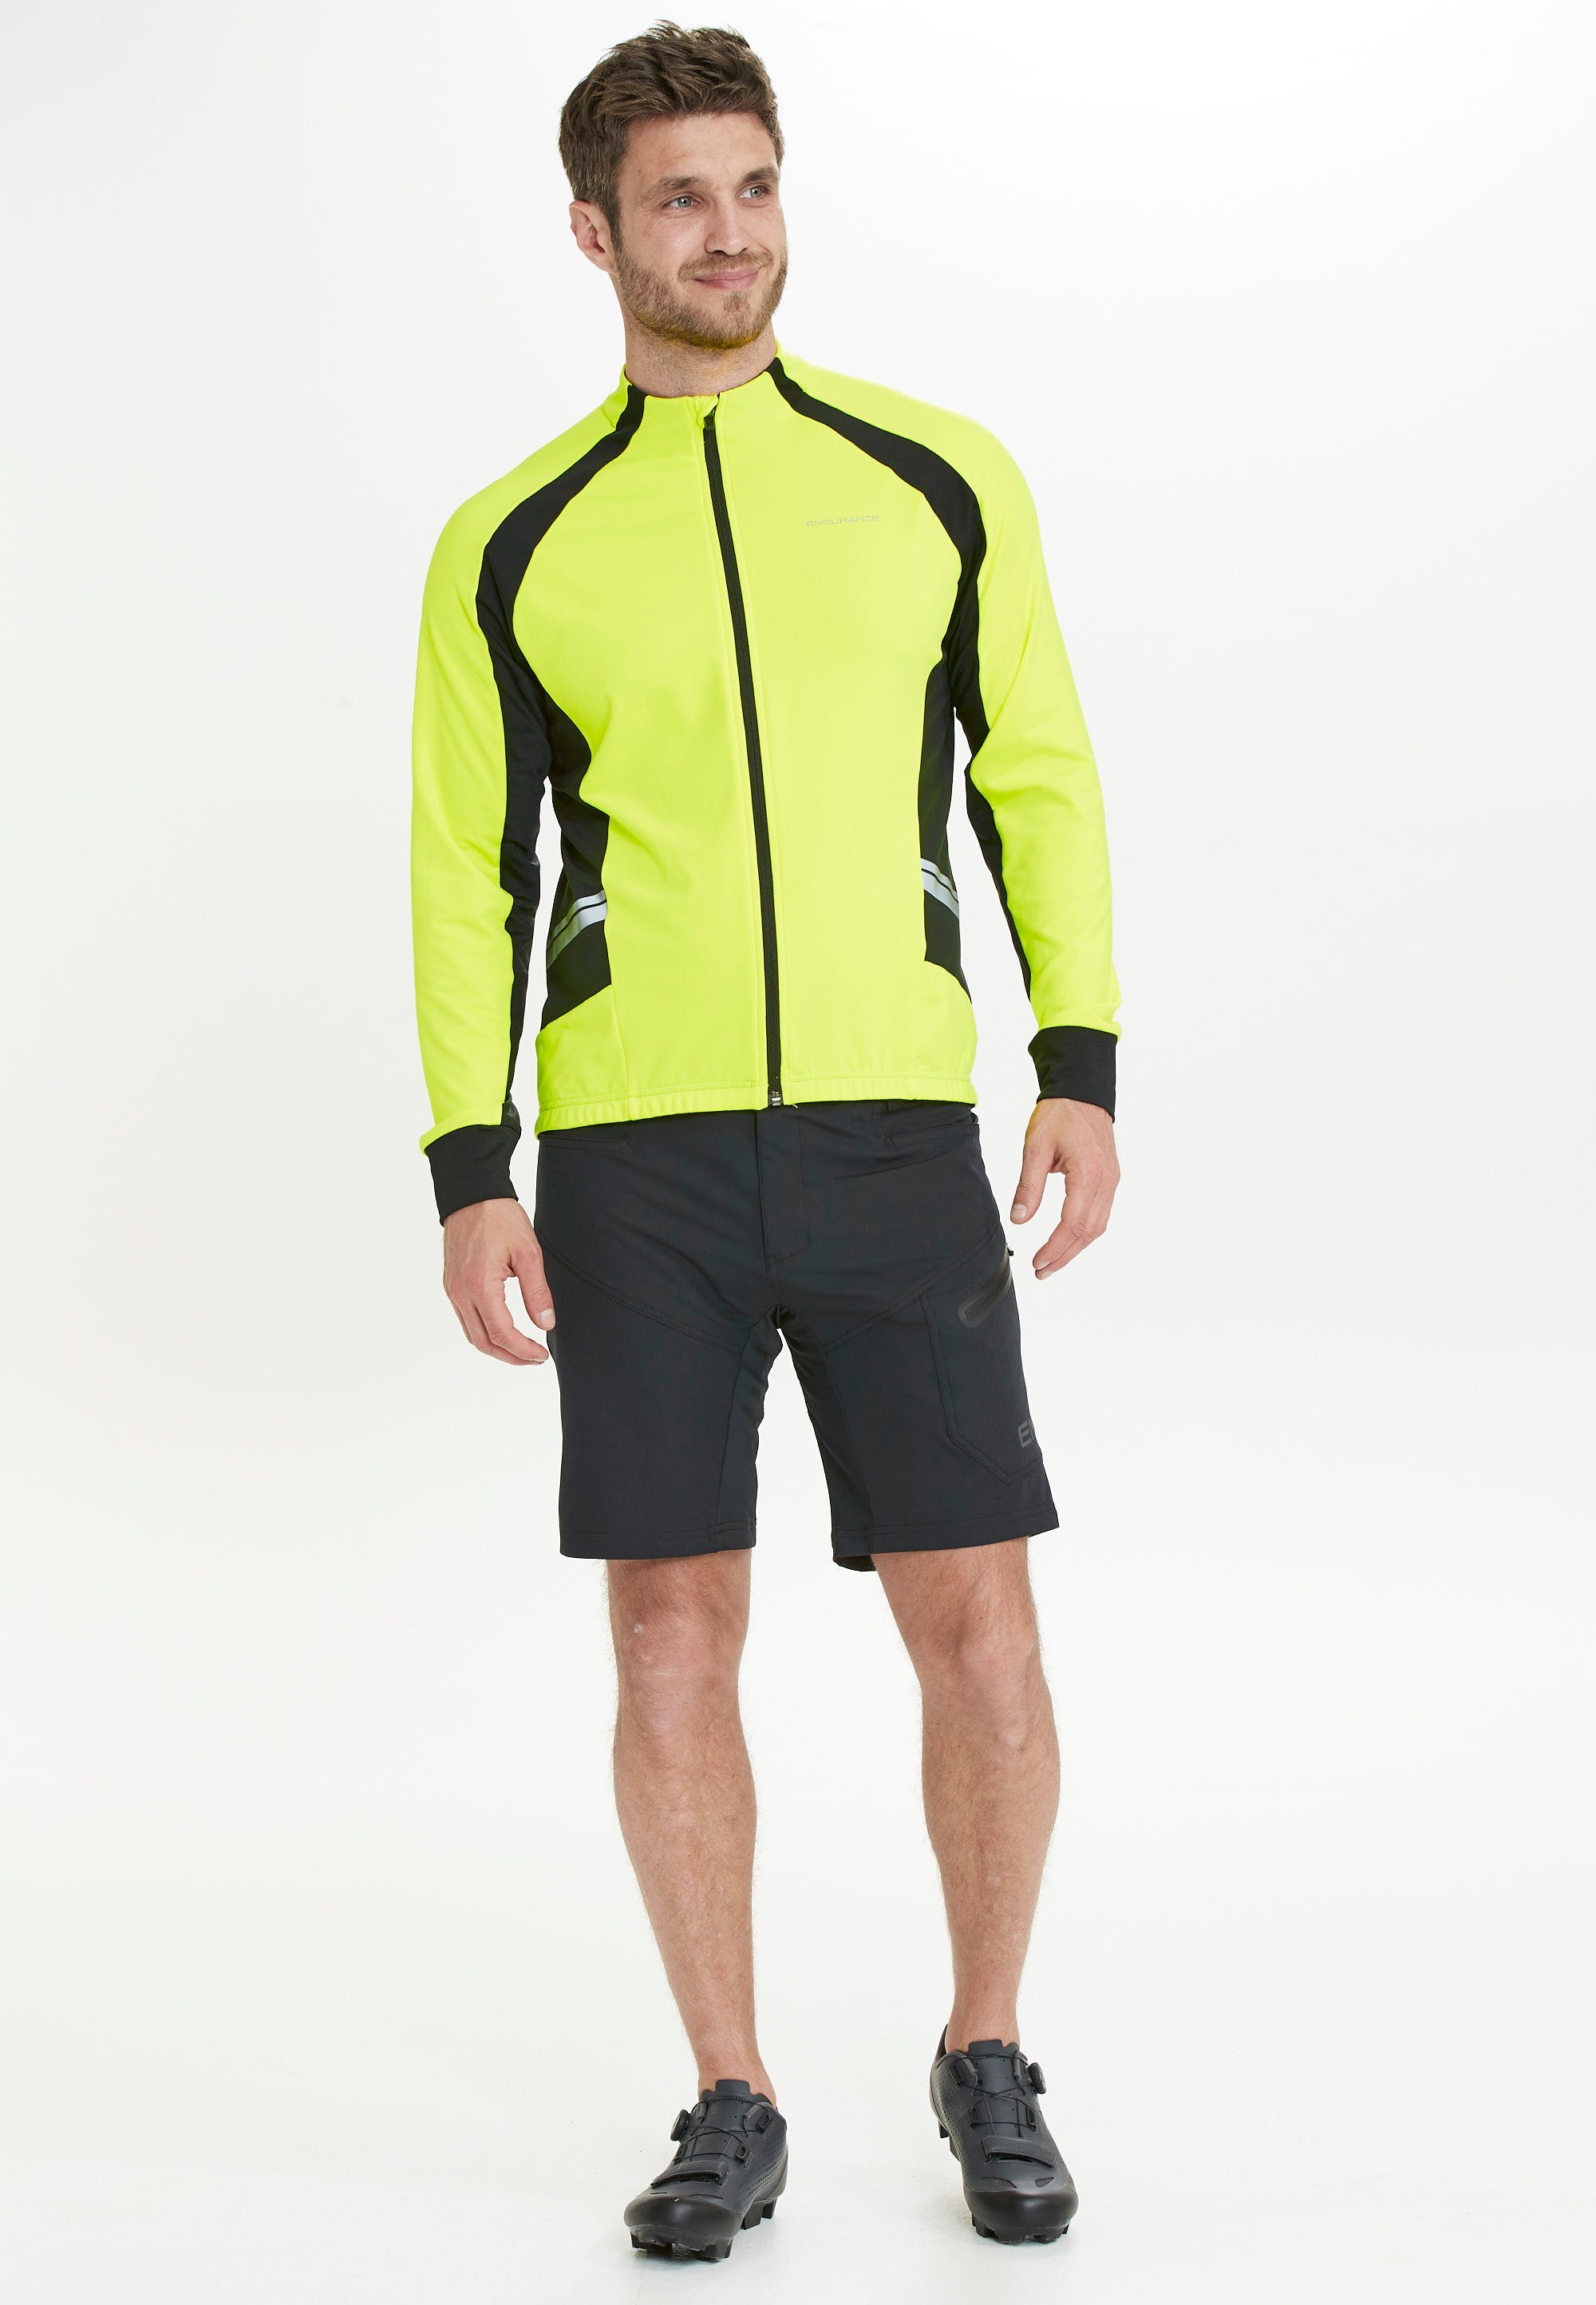 Sport Fahrradbekleidung ENDURANCE Fahrradjacke VERNER M Bike Jacket mit reflektierenden Elementen